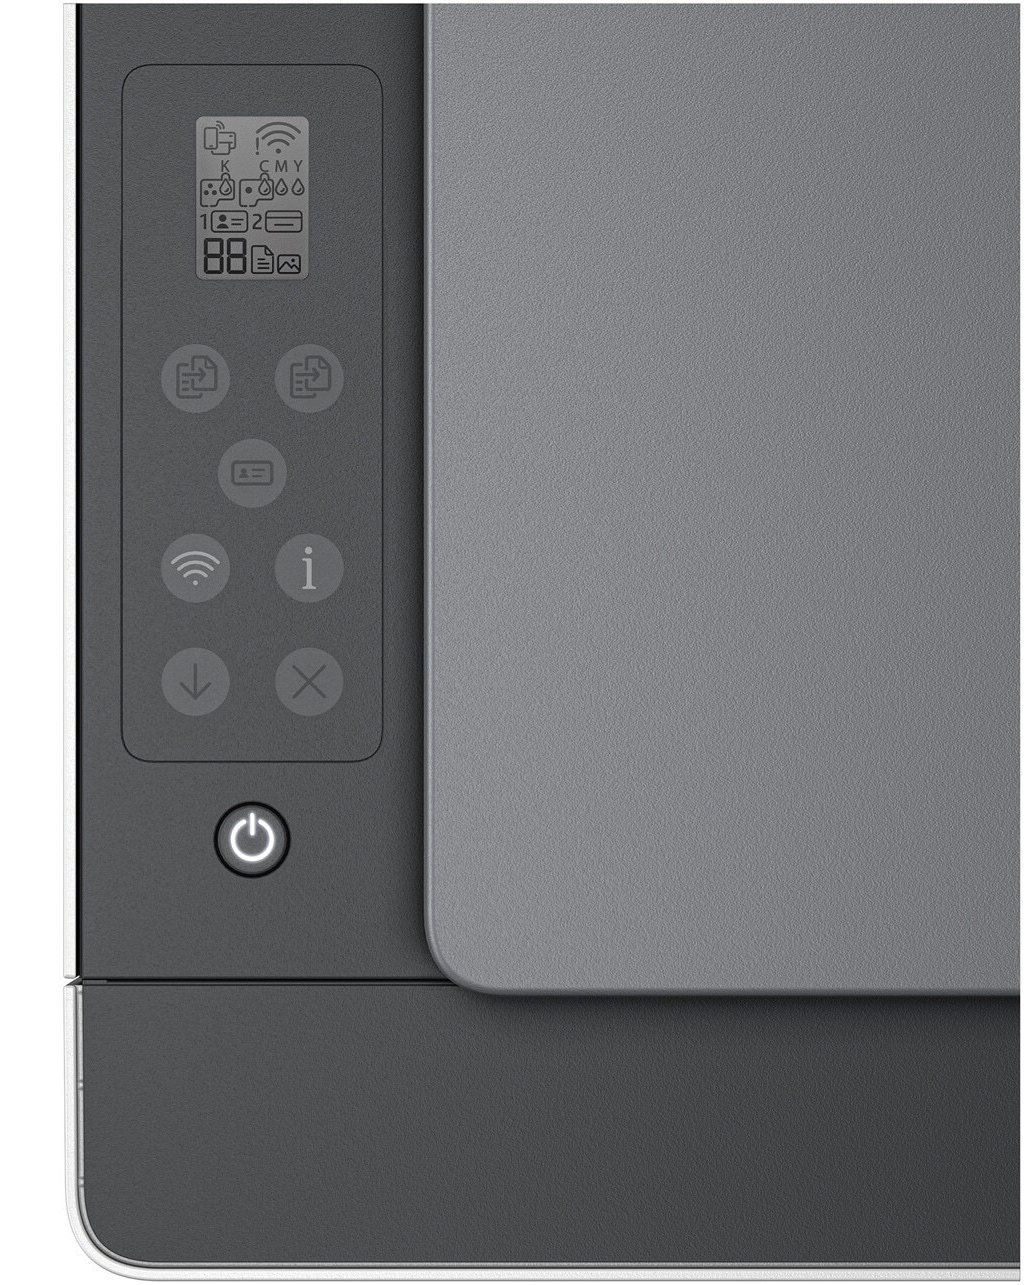 HP - Impresora de Inyección de Tinta HP Smart Tank 5105 All-in-ONE WiFi